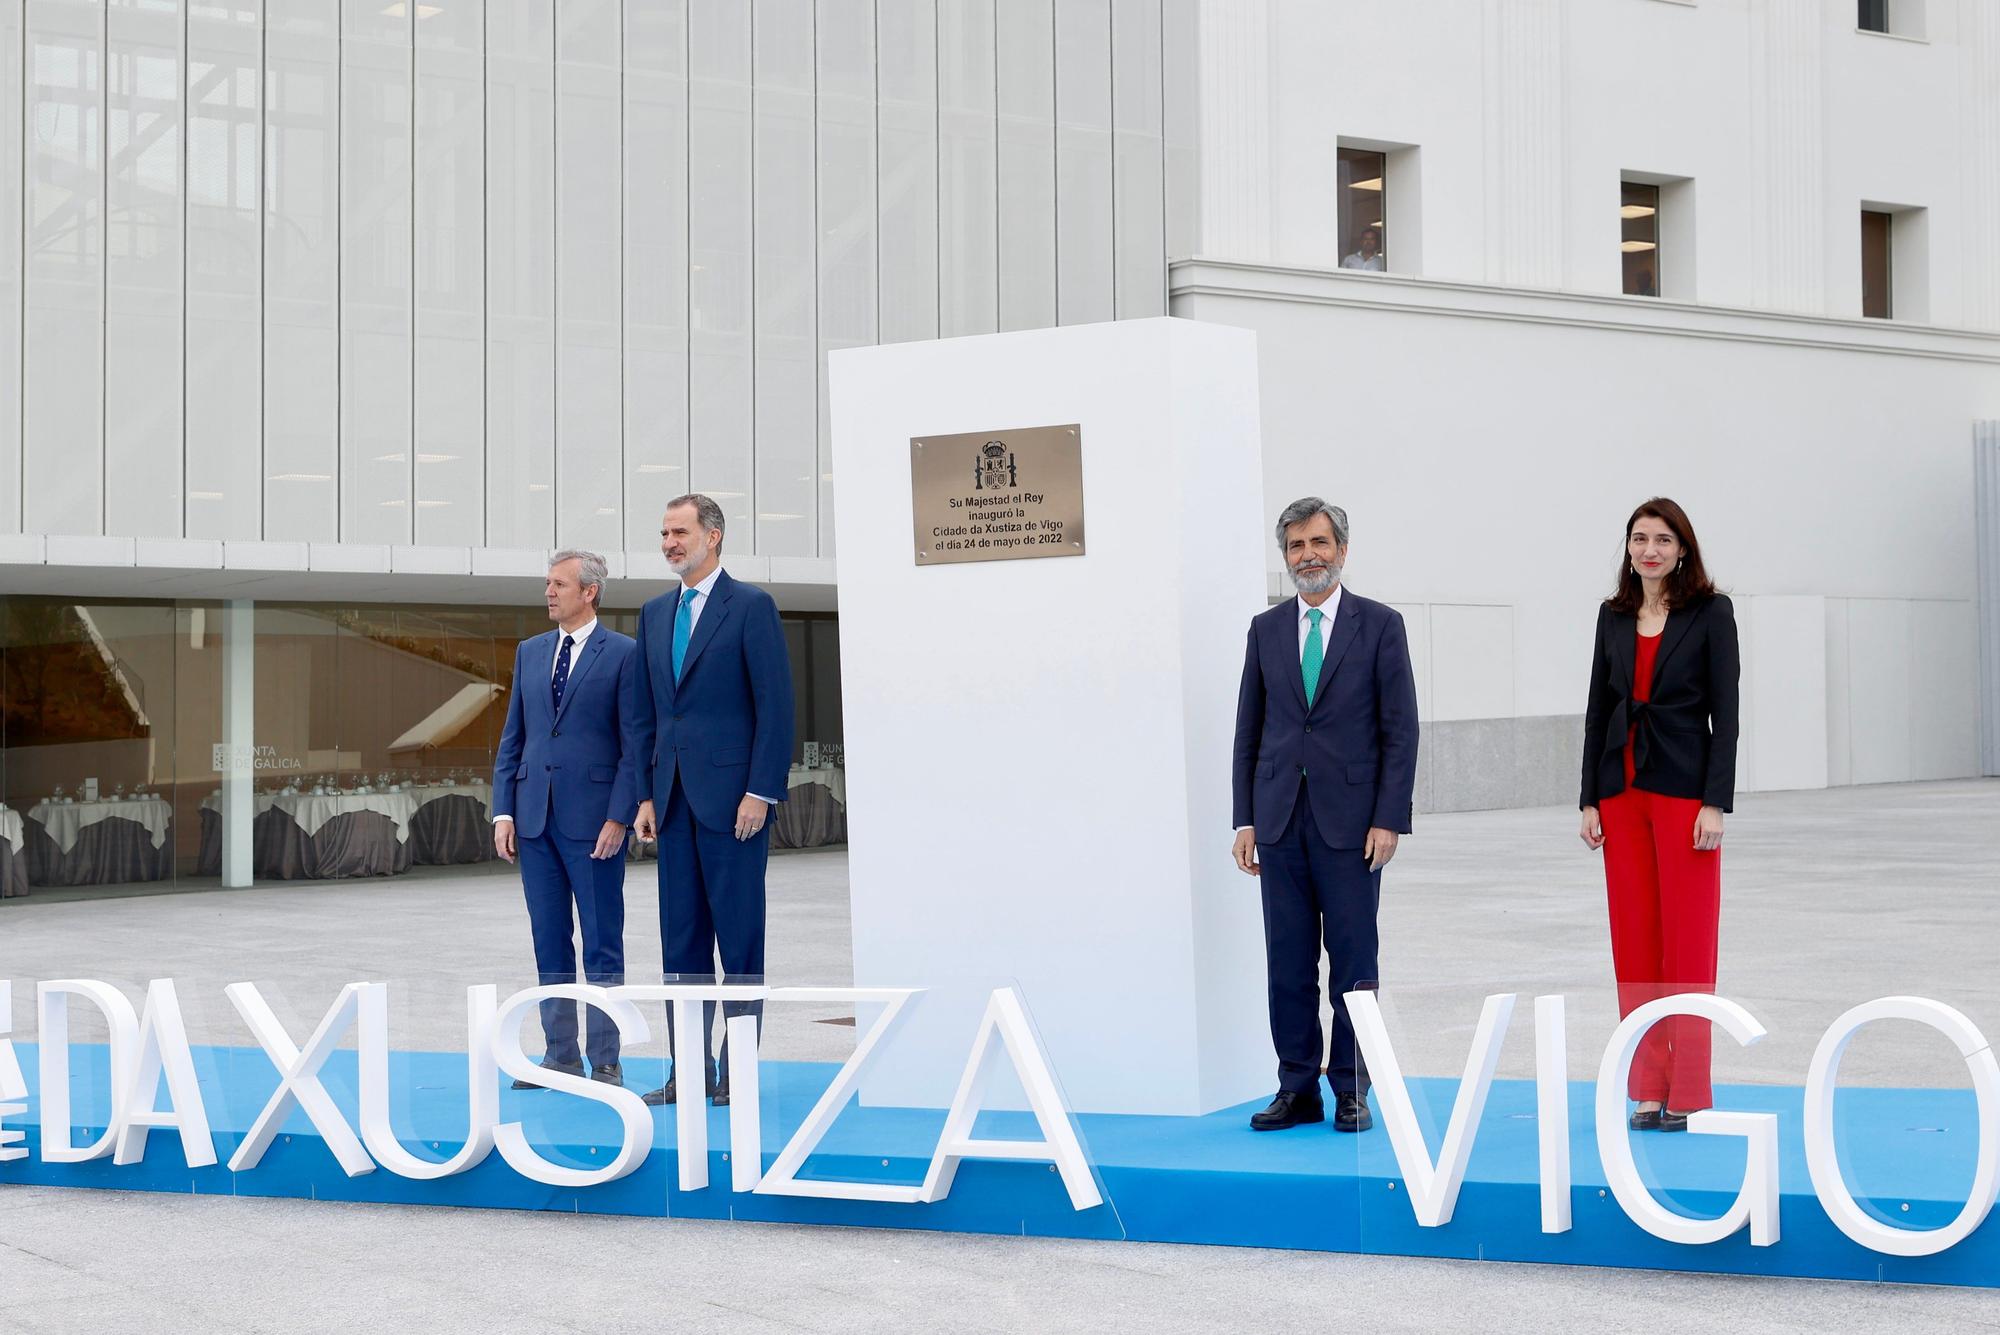 Felipe VI inaugura la Ciudad de la Justicia